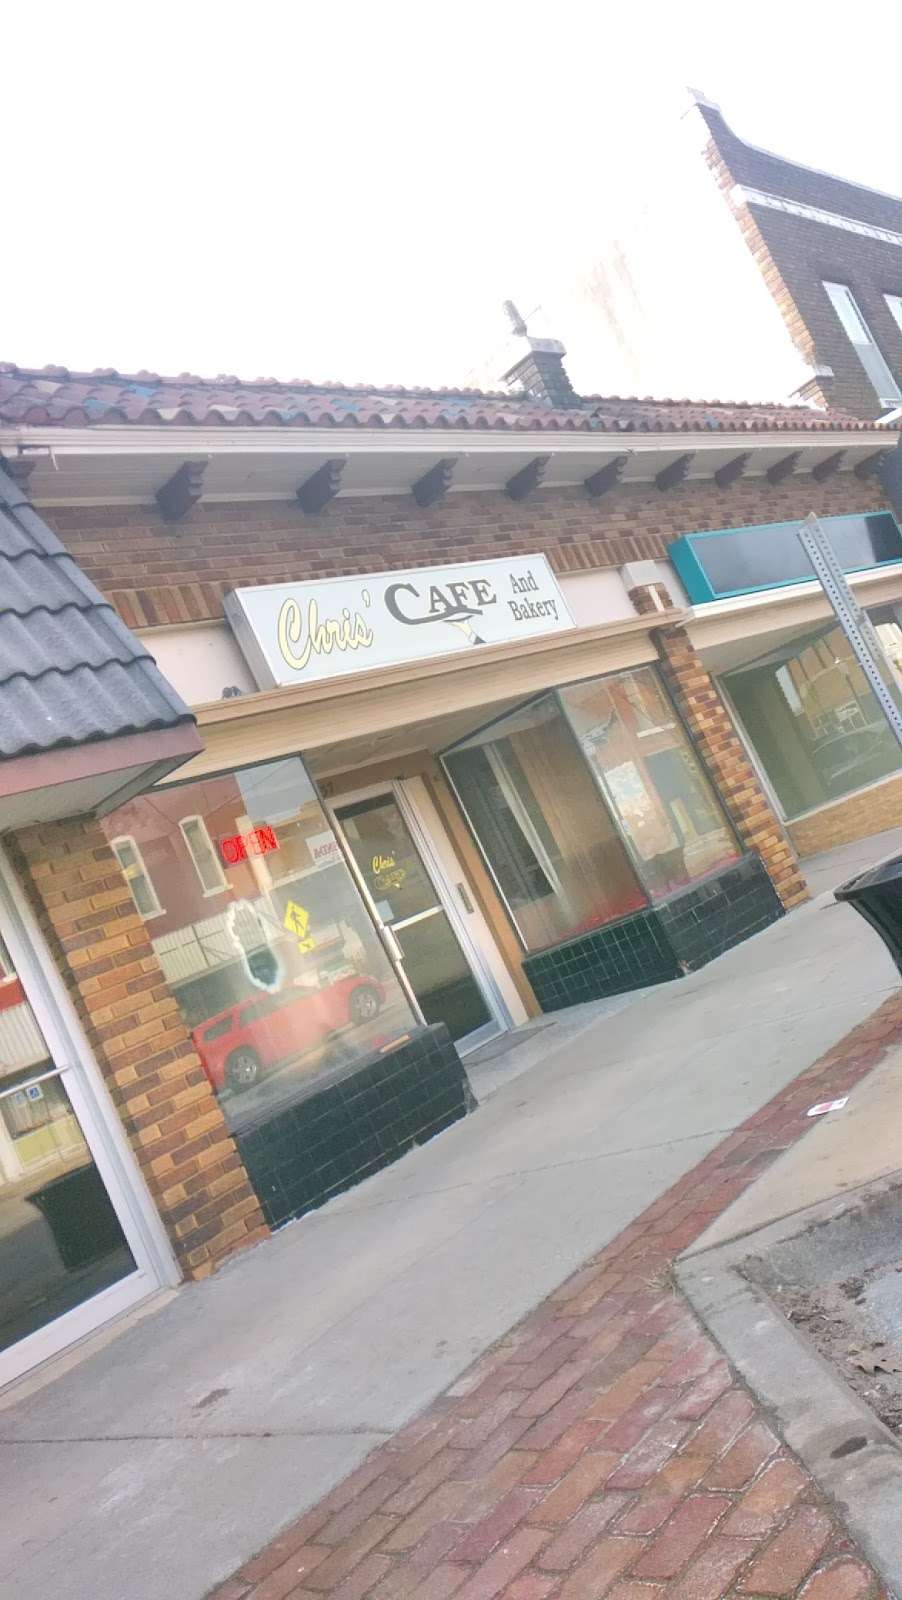 Chriss Cafe | 537 Main St, Osawatomie, KS 66064 | Phone: (913) 256-6012